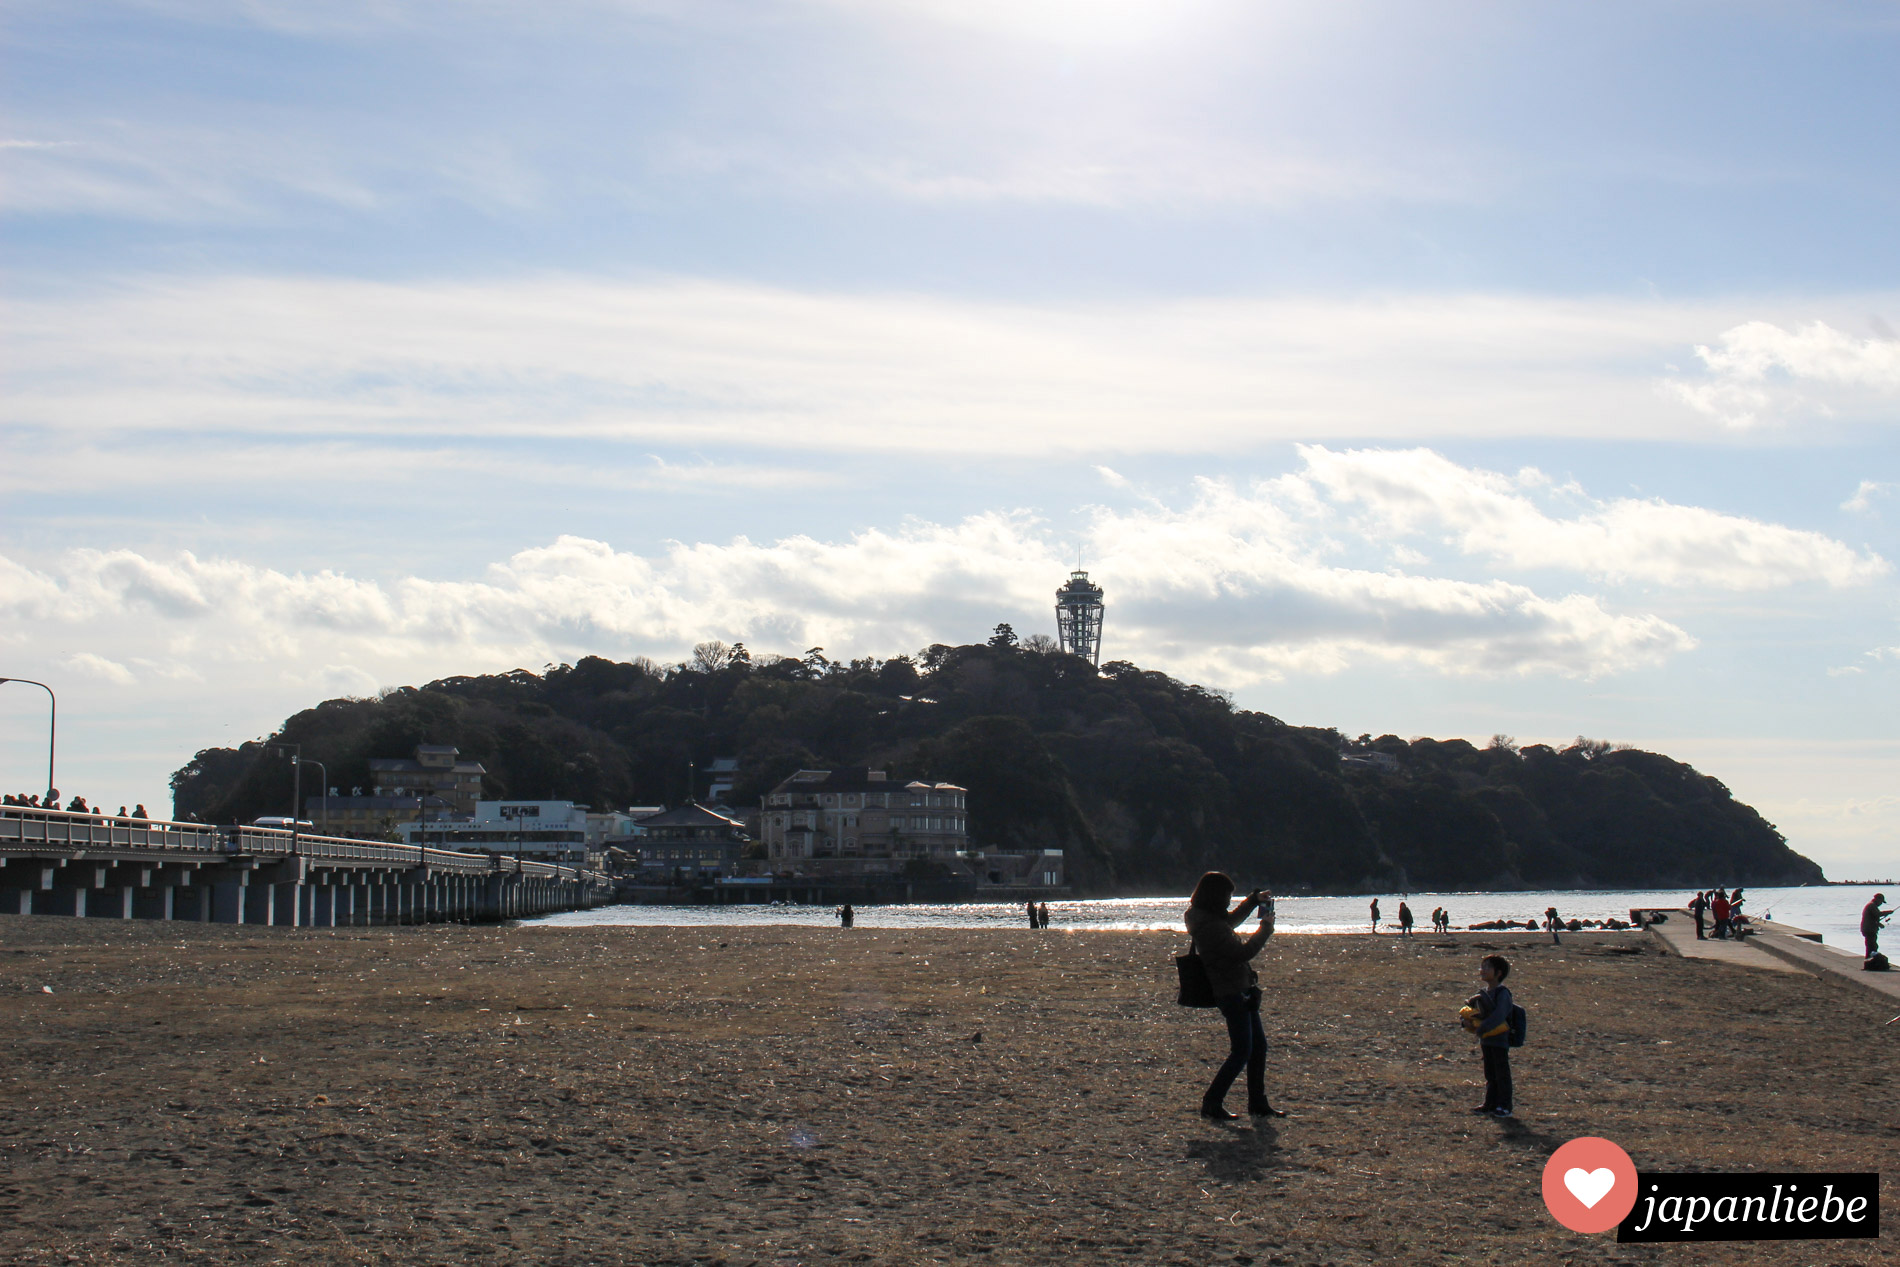 Enoshima ist eine kleine Insel vor der Küste mit mehreren Schreinen, einem Spa und vielen weiteren Attraktionen.